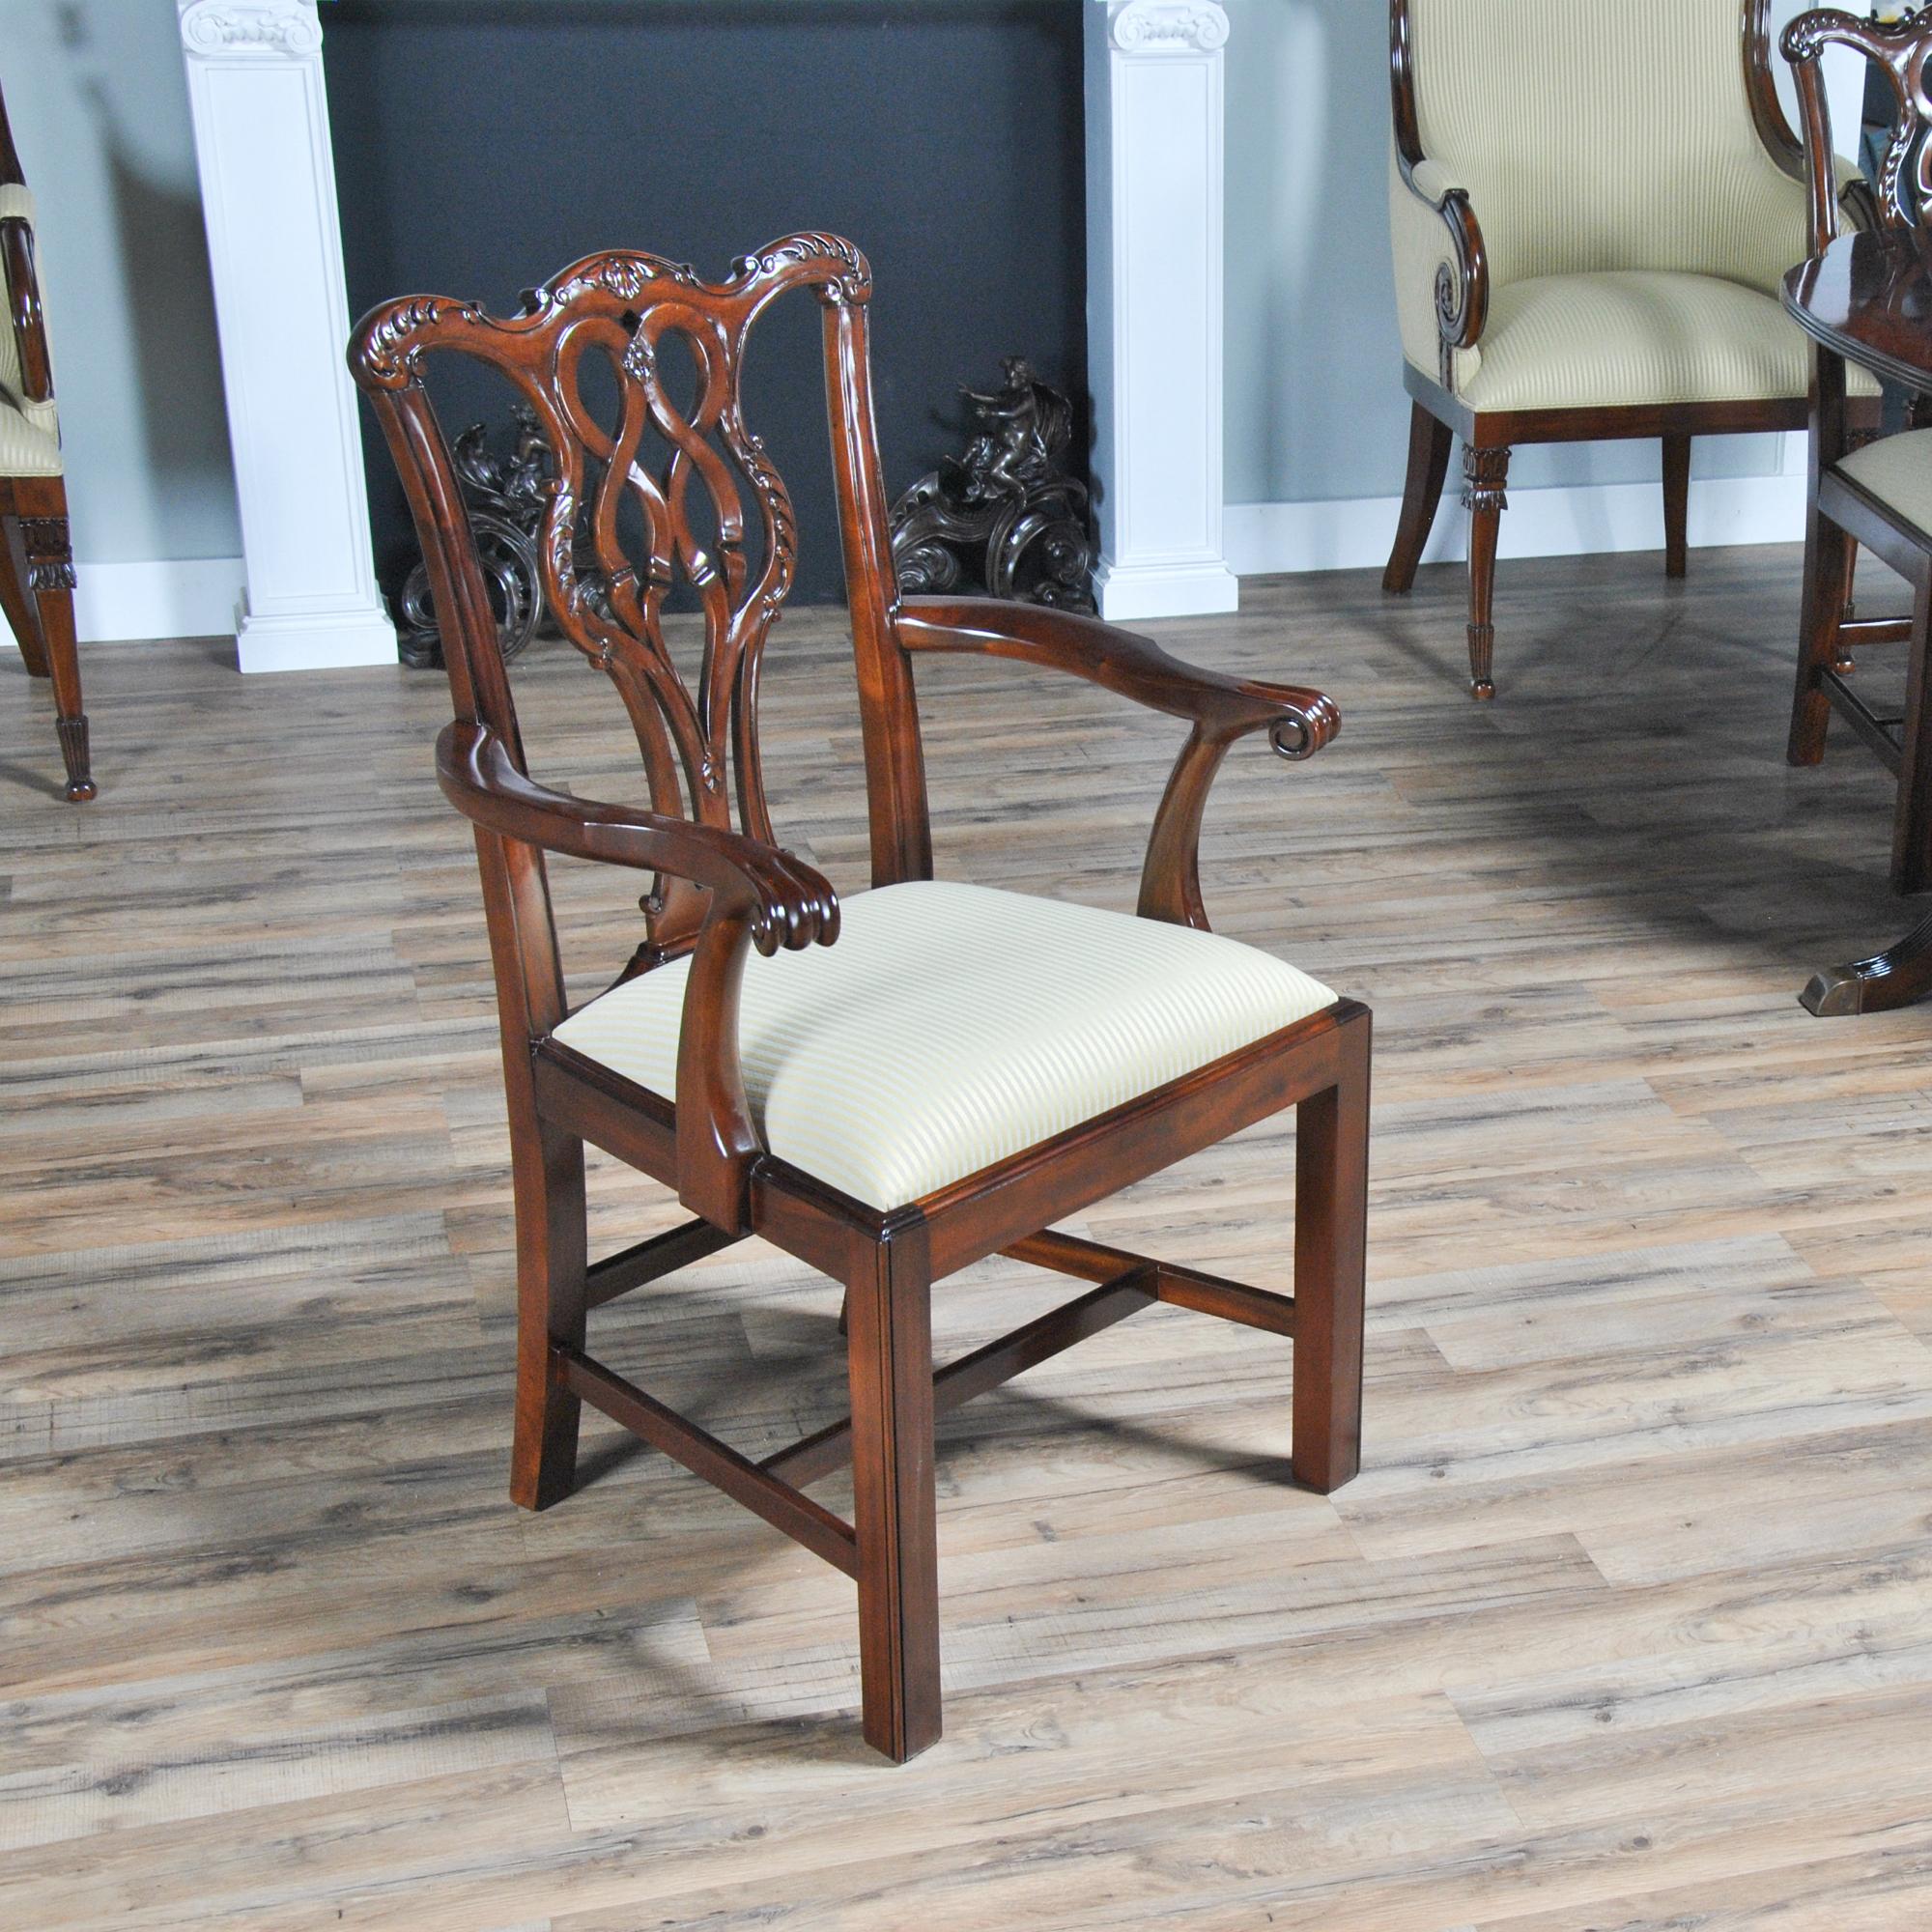 Ensemble de 10 chaises Chippendale en acajou massif, sculptées à la main, comprenant 2 fauteuils à accoudoir et 8 chaises d'appoint. Chaque chaise est dotée d'une traverse serpentine et d'un dossier similaire, le tout sculpté à la main dans de